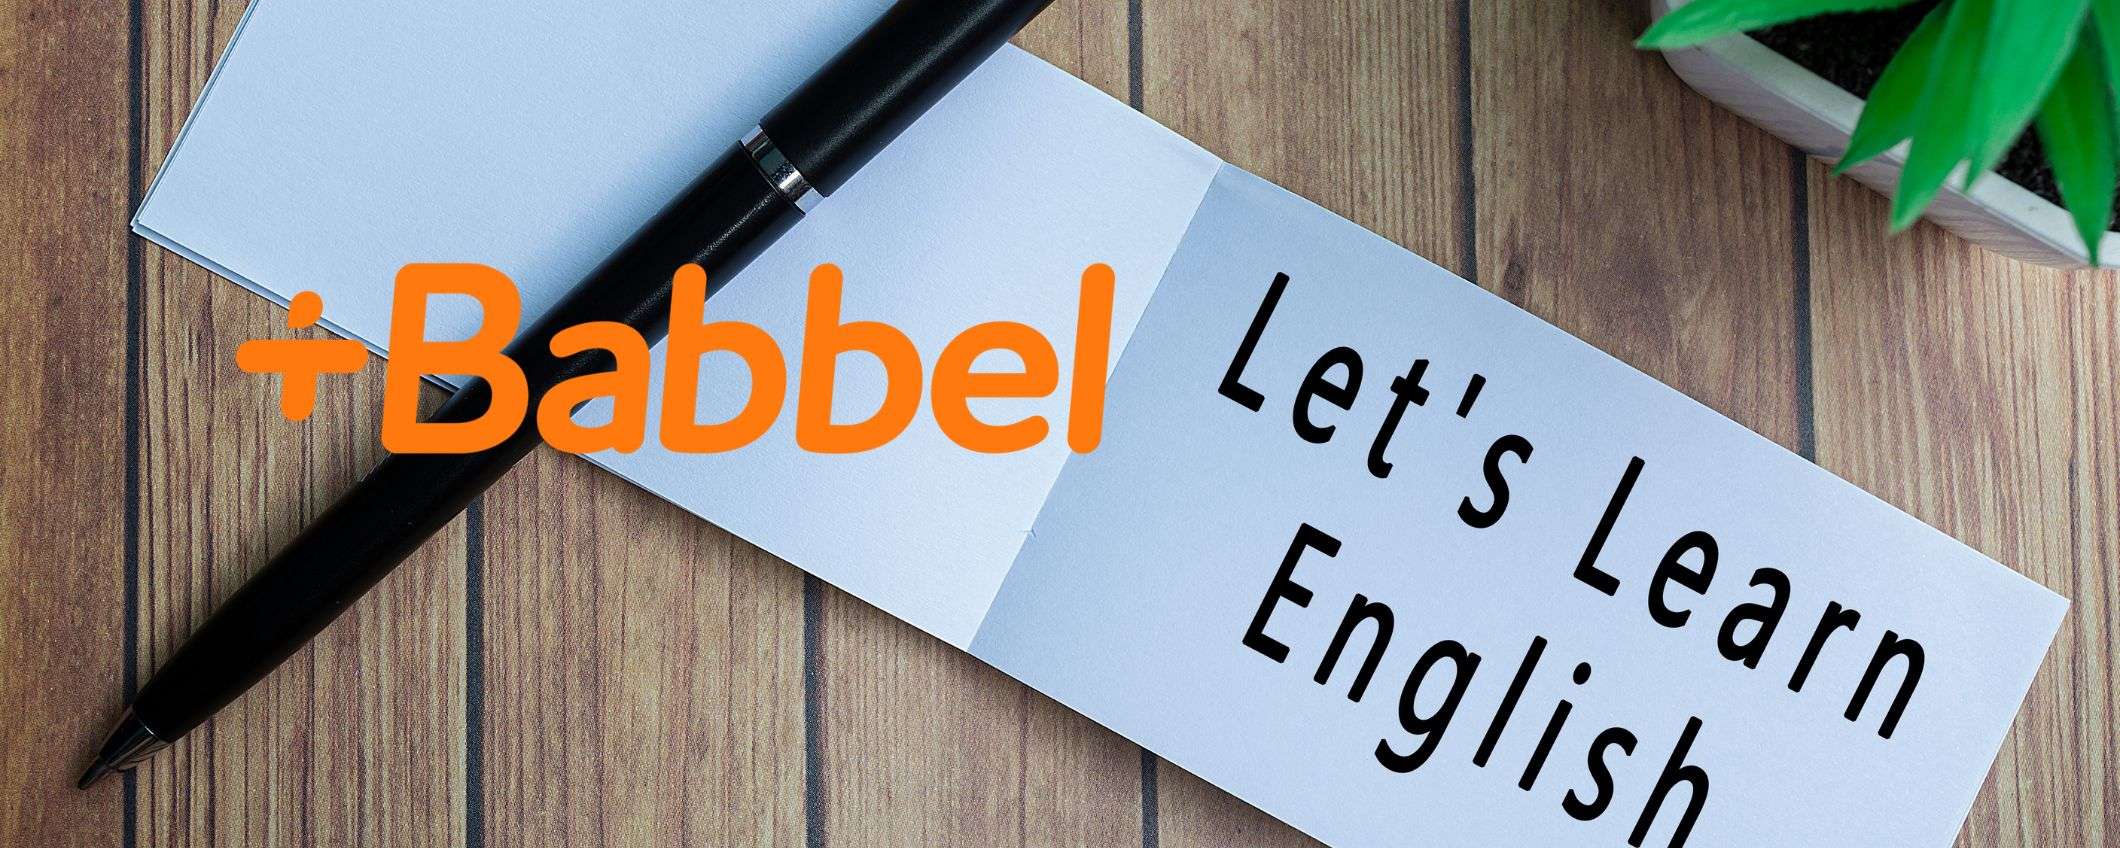 Babbel: impara una nuova lingua con attività motivanti da 5,99€